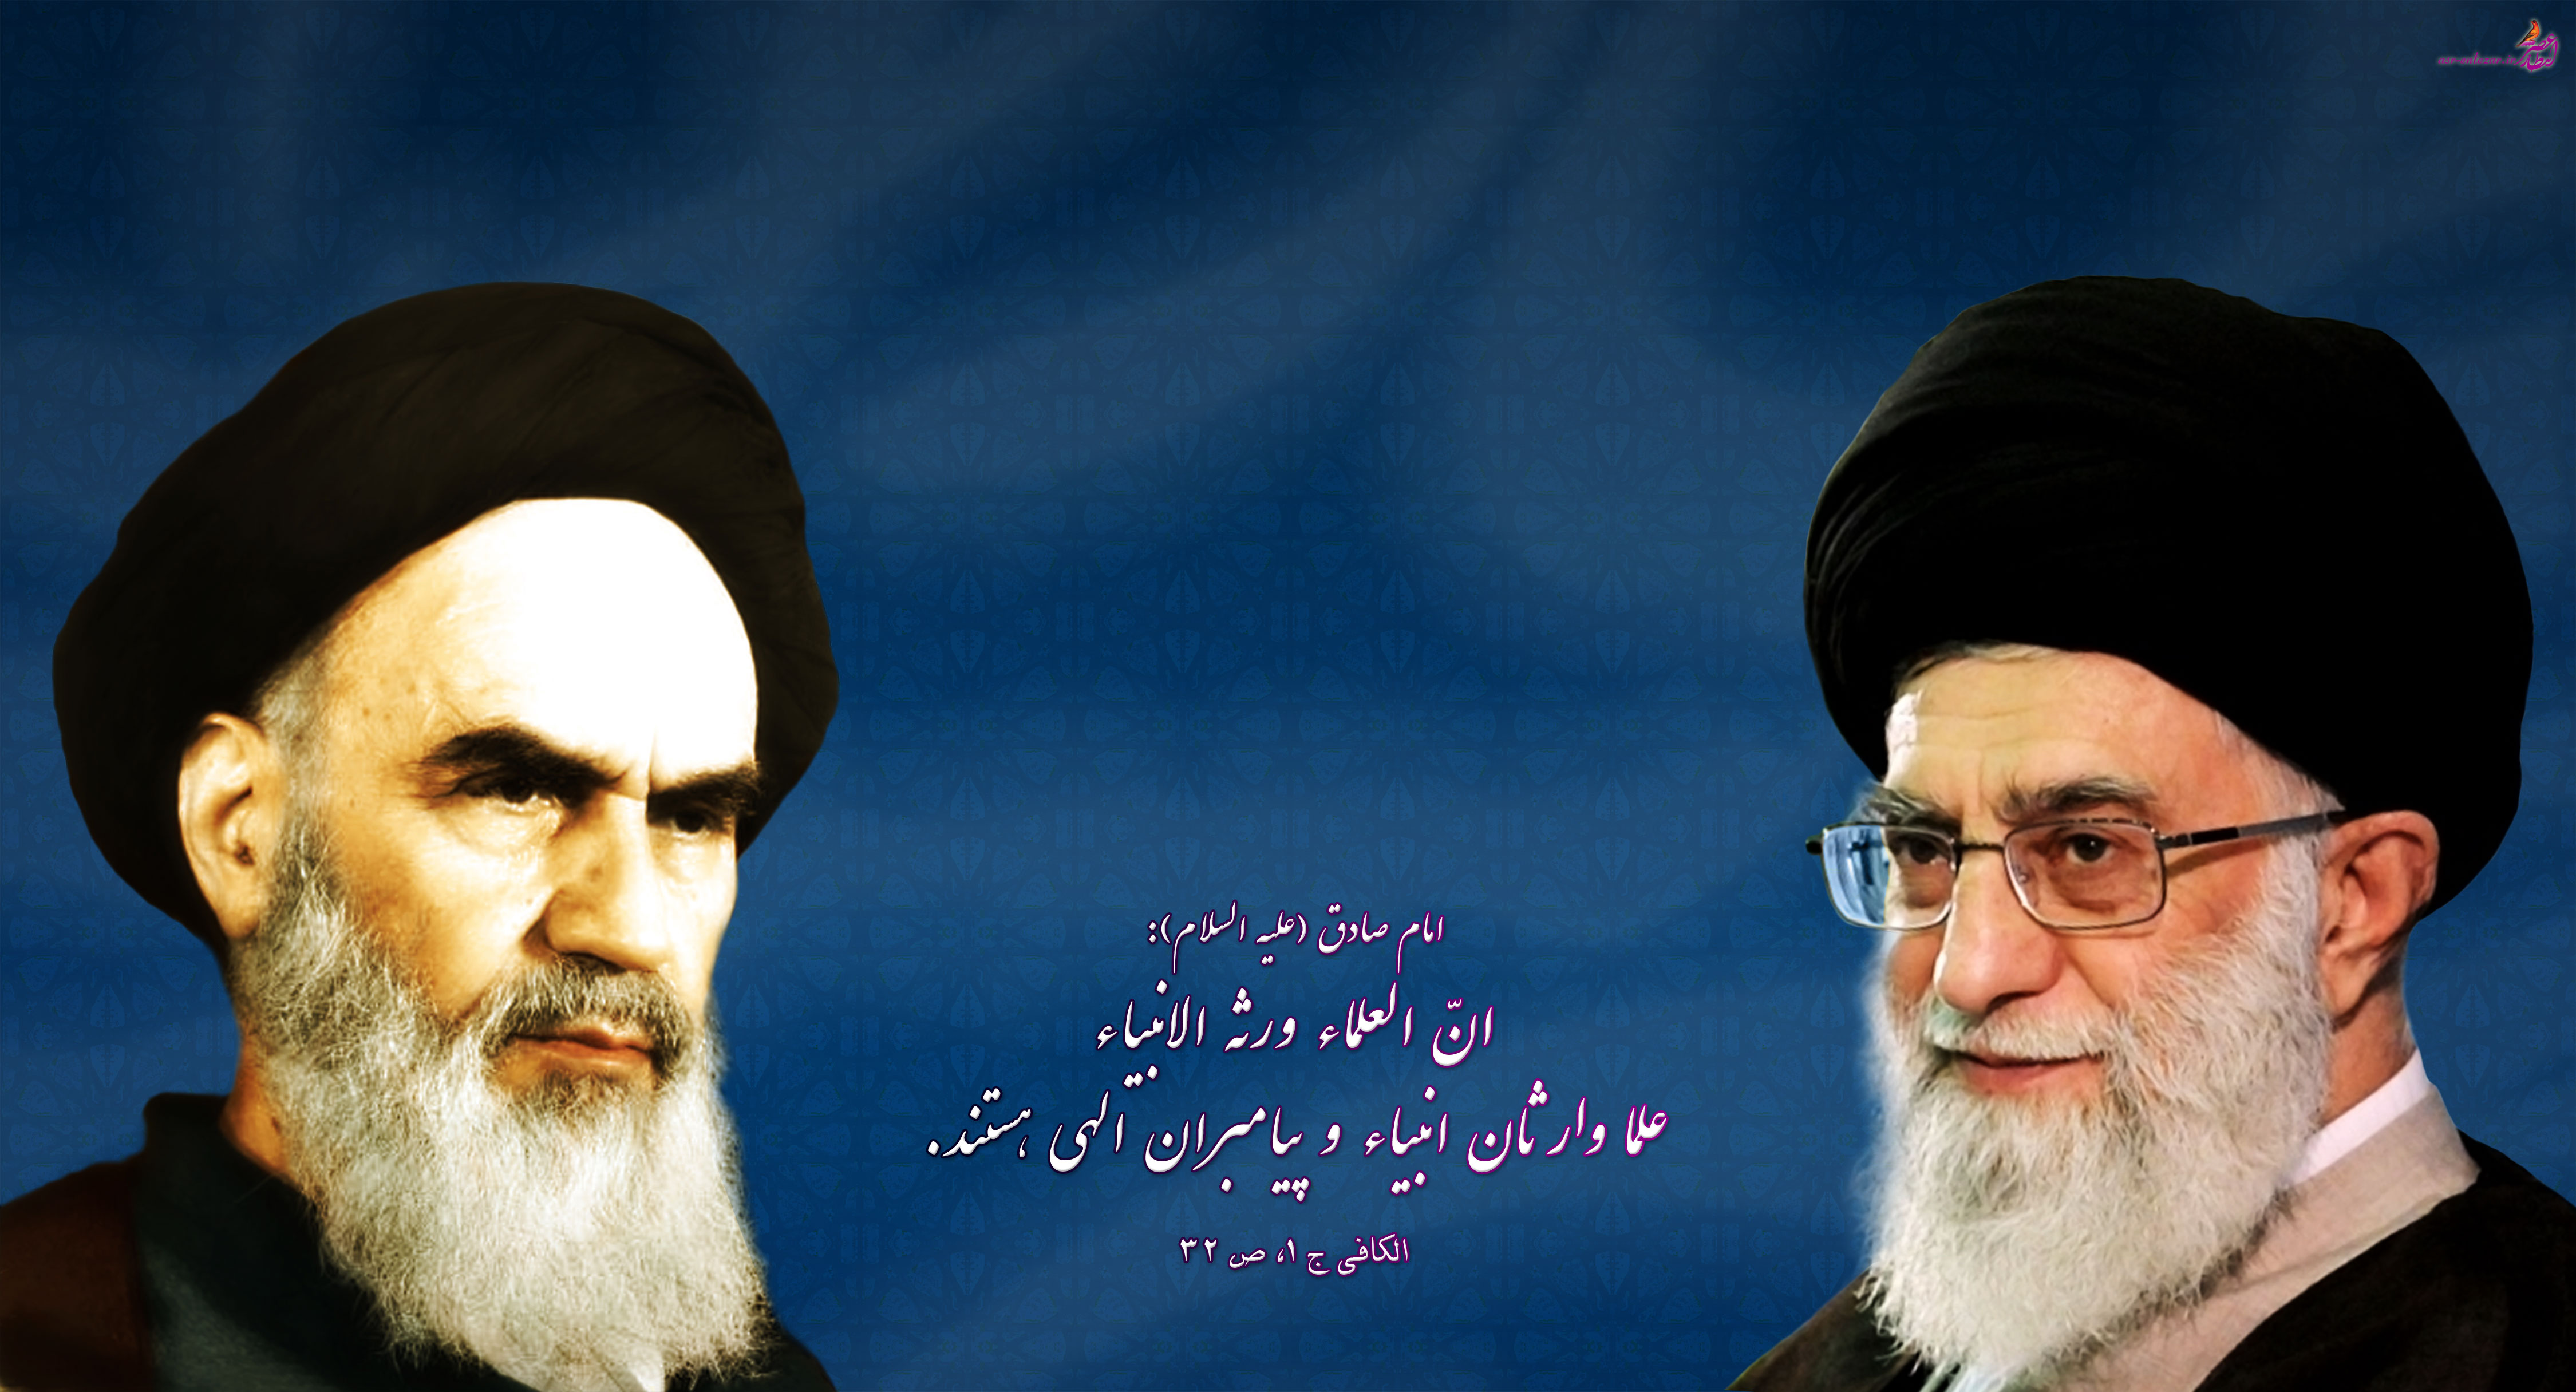 عکس امام و رهبری با کیفیت بالا لایه باز